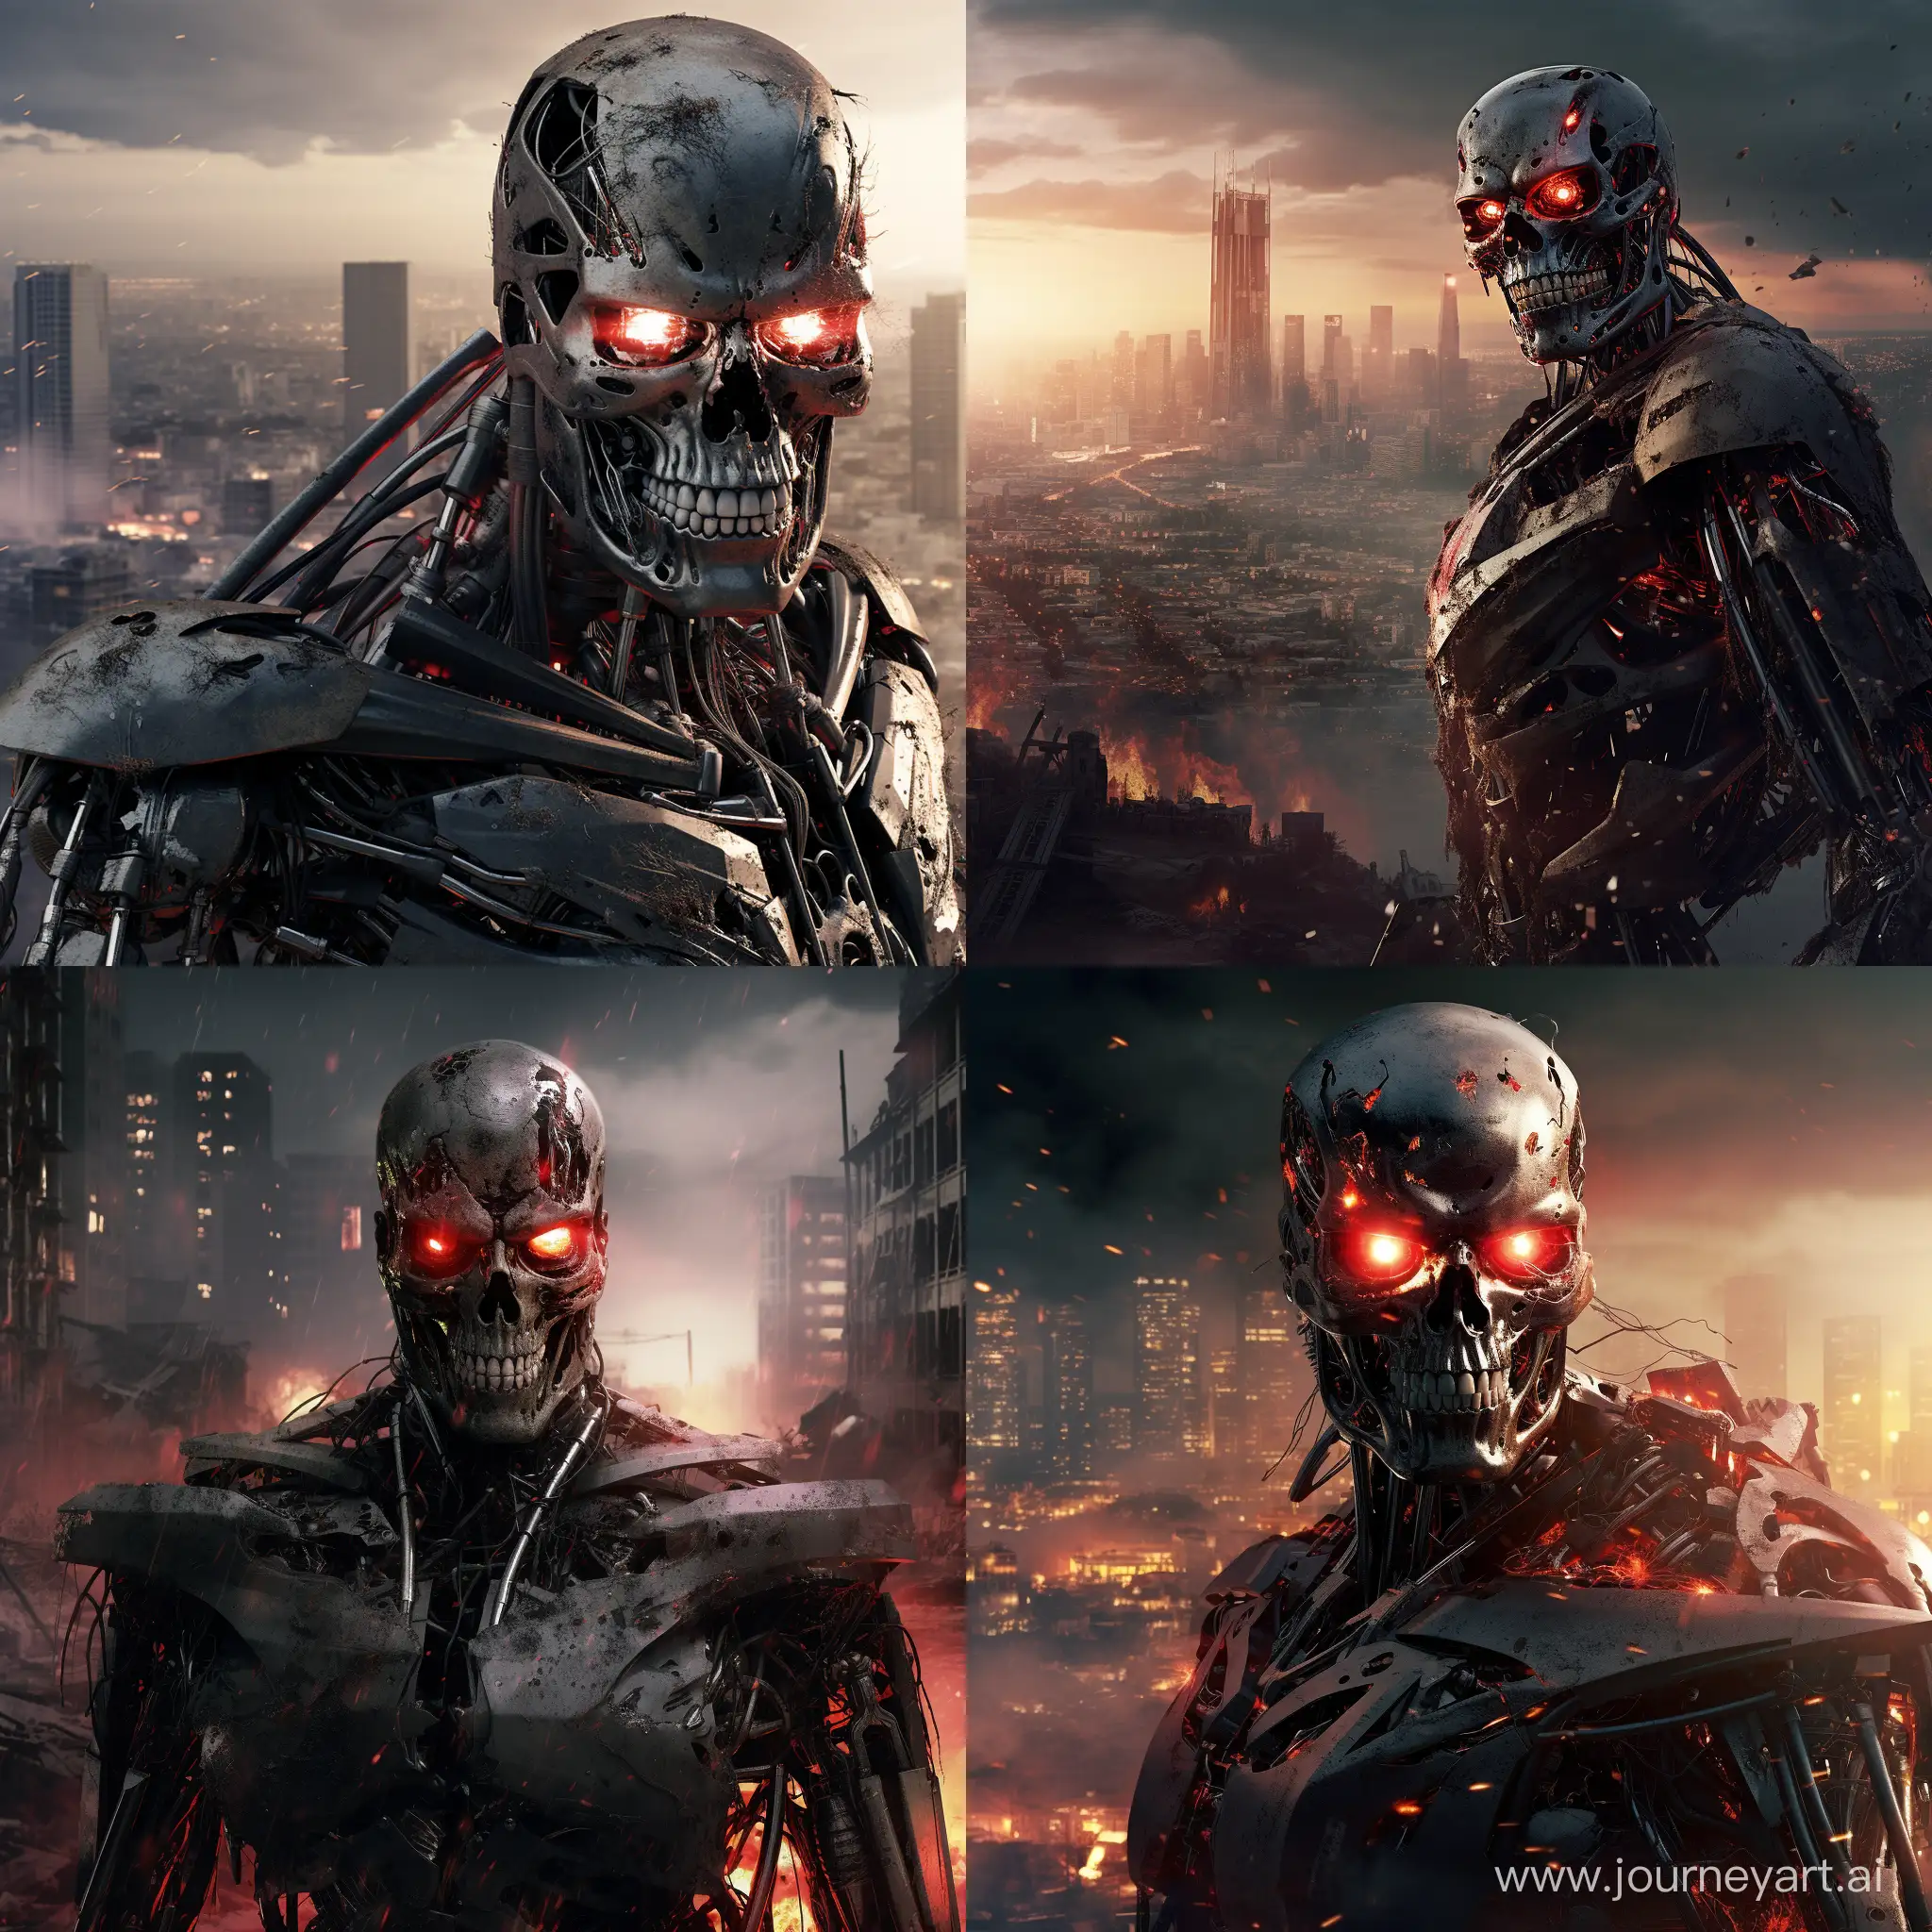 Destroyed-City-Terminator-T600-PostApocalyptic-Robotic-Scene